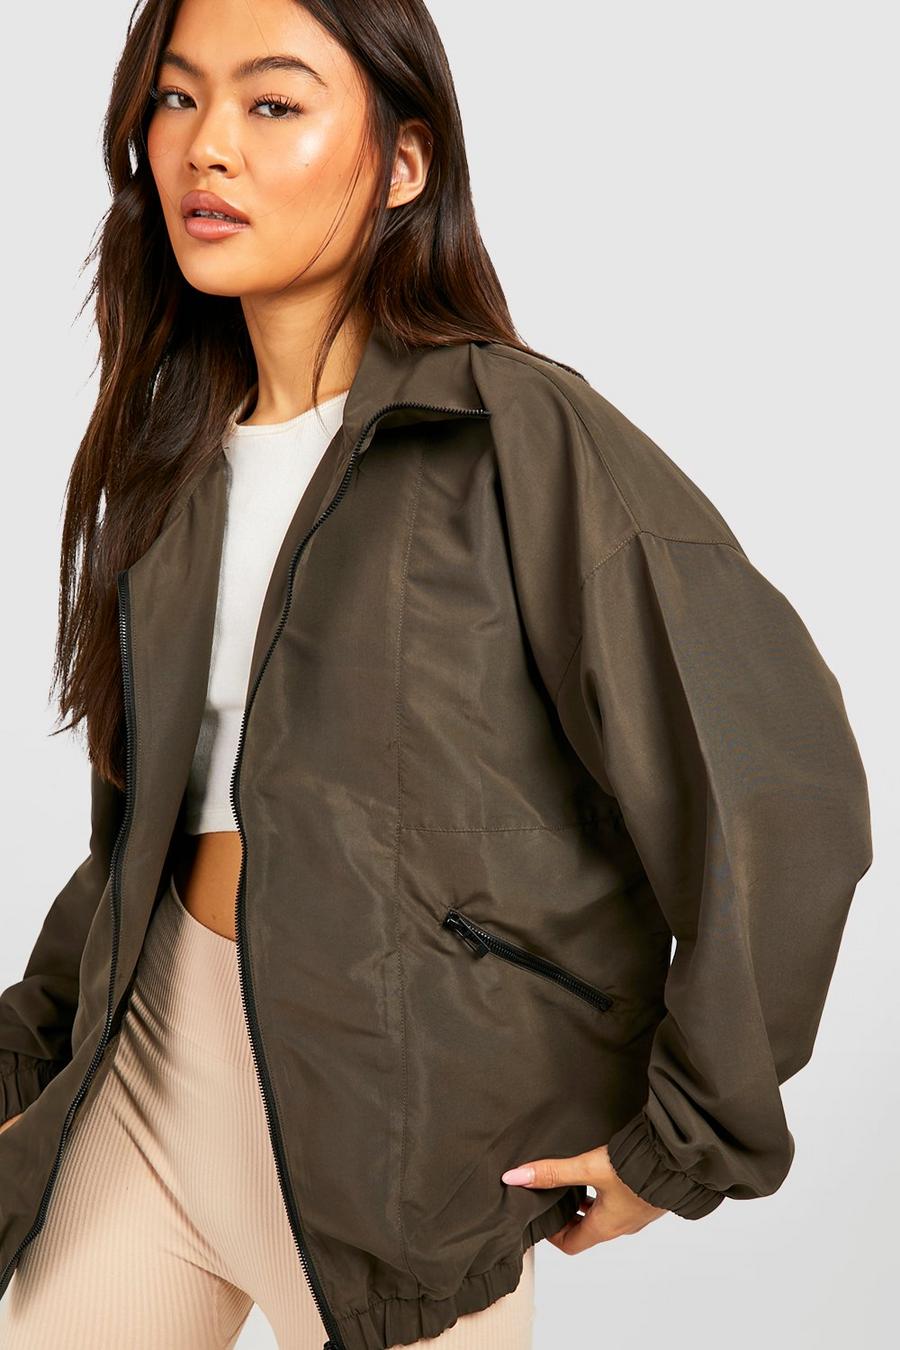 Global Blank Womens Cropped Jacket Crop Top Hoodies for Women